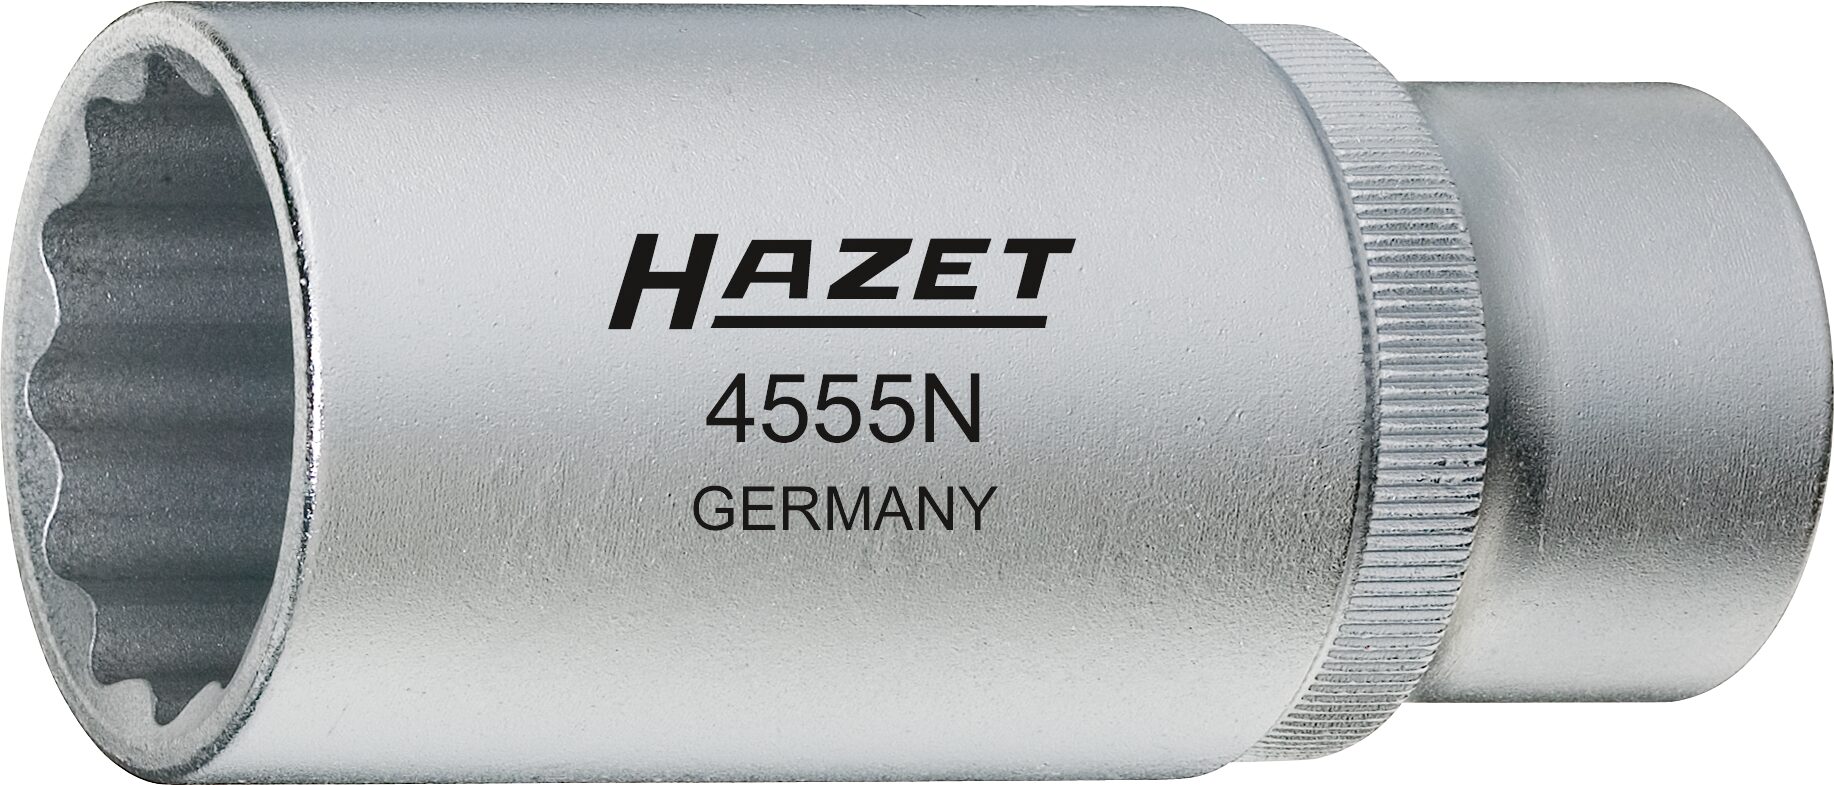 HAZET Einspritzdüsen-Werkzeug 4555N · Vierkant hohl 12,5 mm (1/2 Zoll) · Außen Doppel-Sechskant Profil · 27 mm